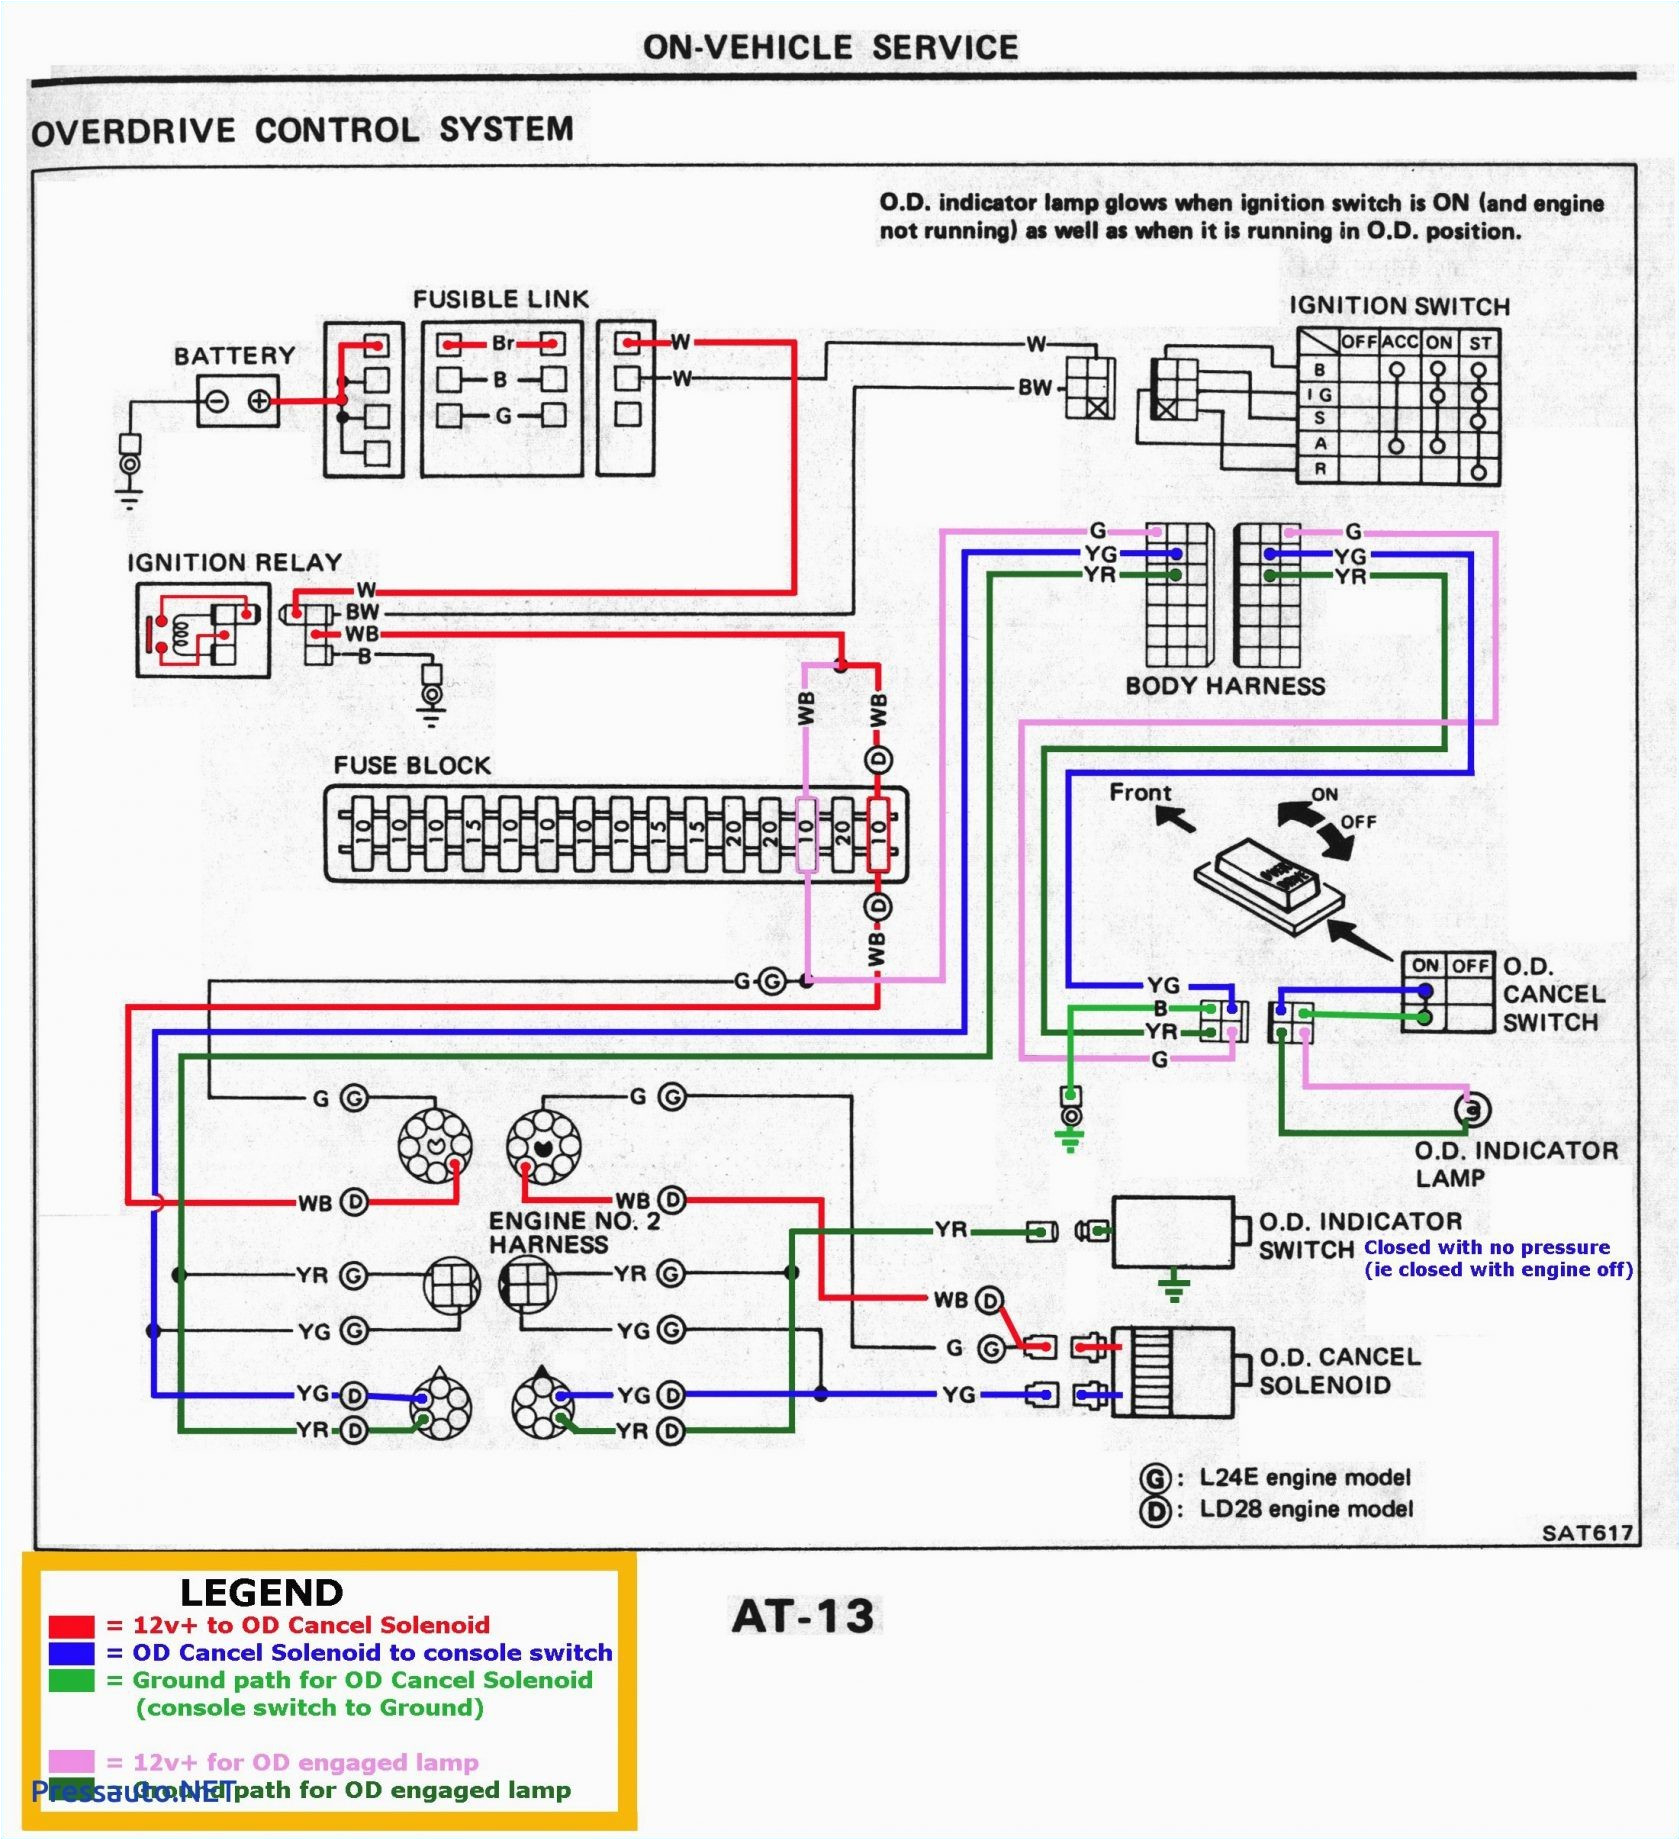 1995 Camaro Radio Wiring Diagram Chevy Camaro Ignition Wiring Wiring Diagram Schema